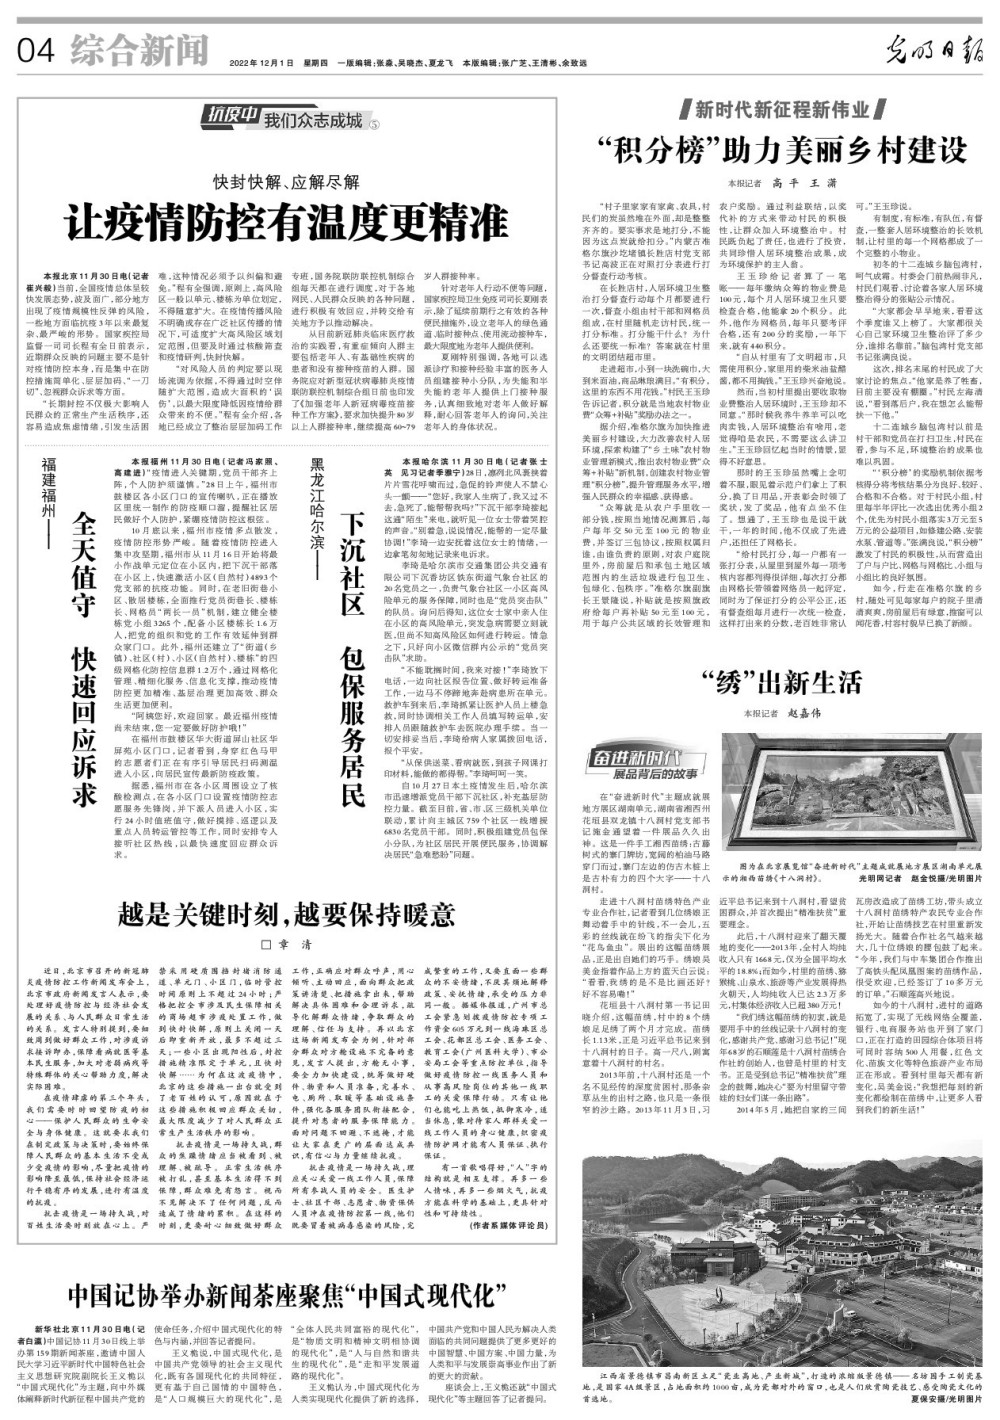 黑龙江哈尔滨——下沉社区包保服务居民2021年经济大事件